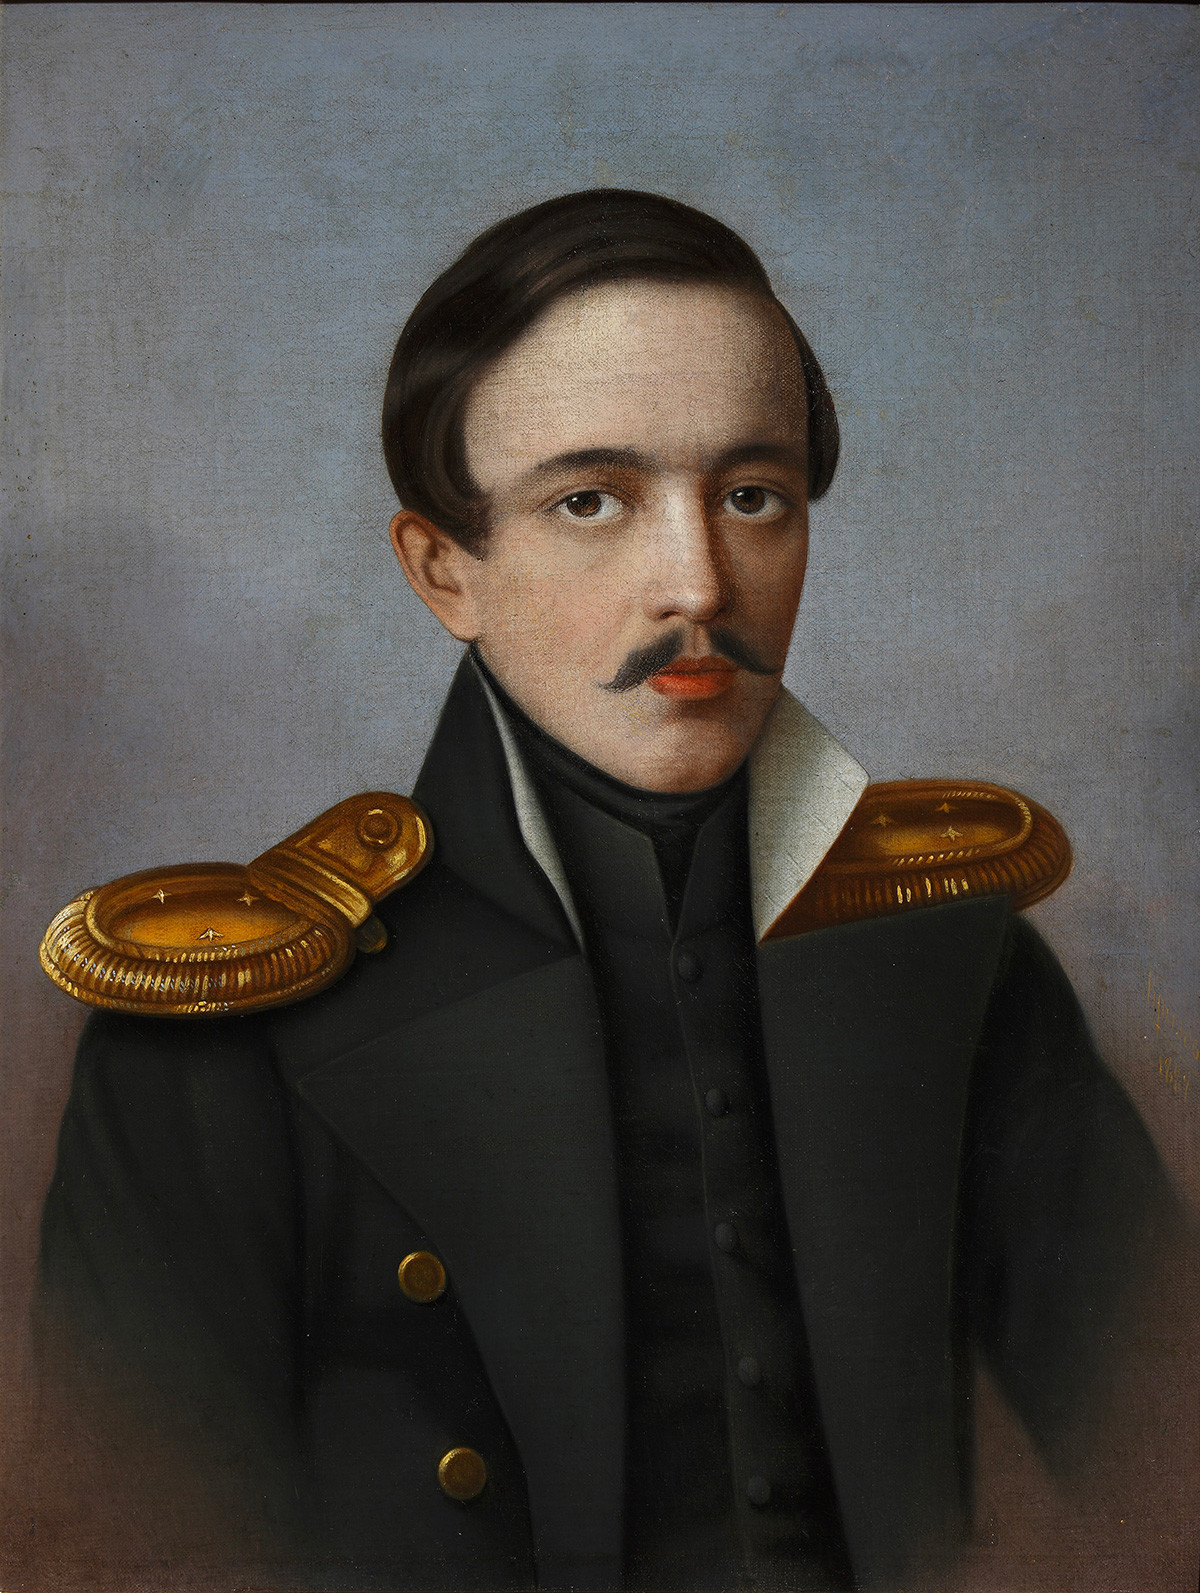 Retrato del poeta y escritor Mijaíl Lérmontov, 1887. Encontrado en la colección del Instituto de Literatura Rusa IRLI (Casa Pushkin), San Petersburgo. Artista: G. Krilov. 